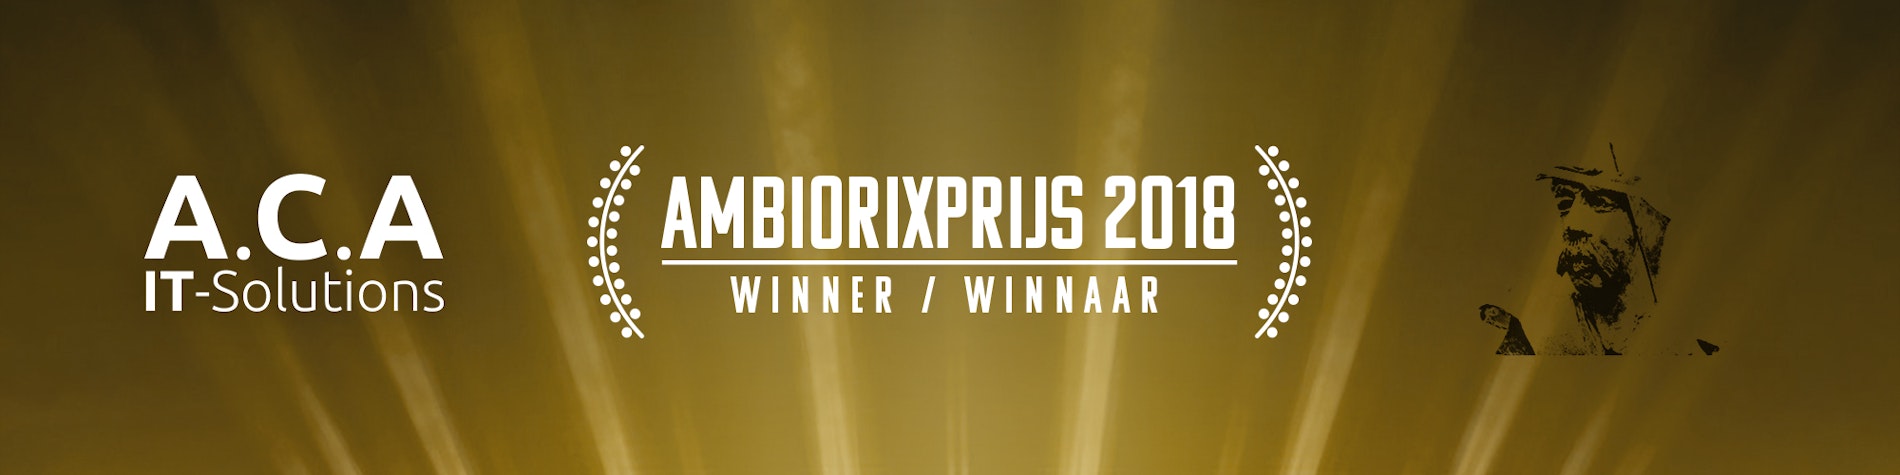 ACA wins Ambiorixprijs 2018